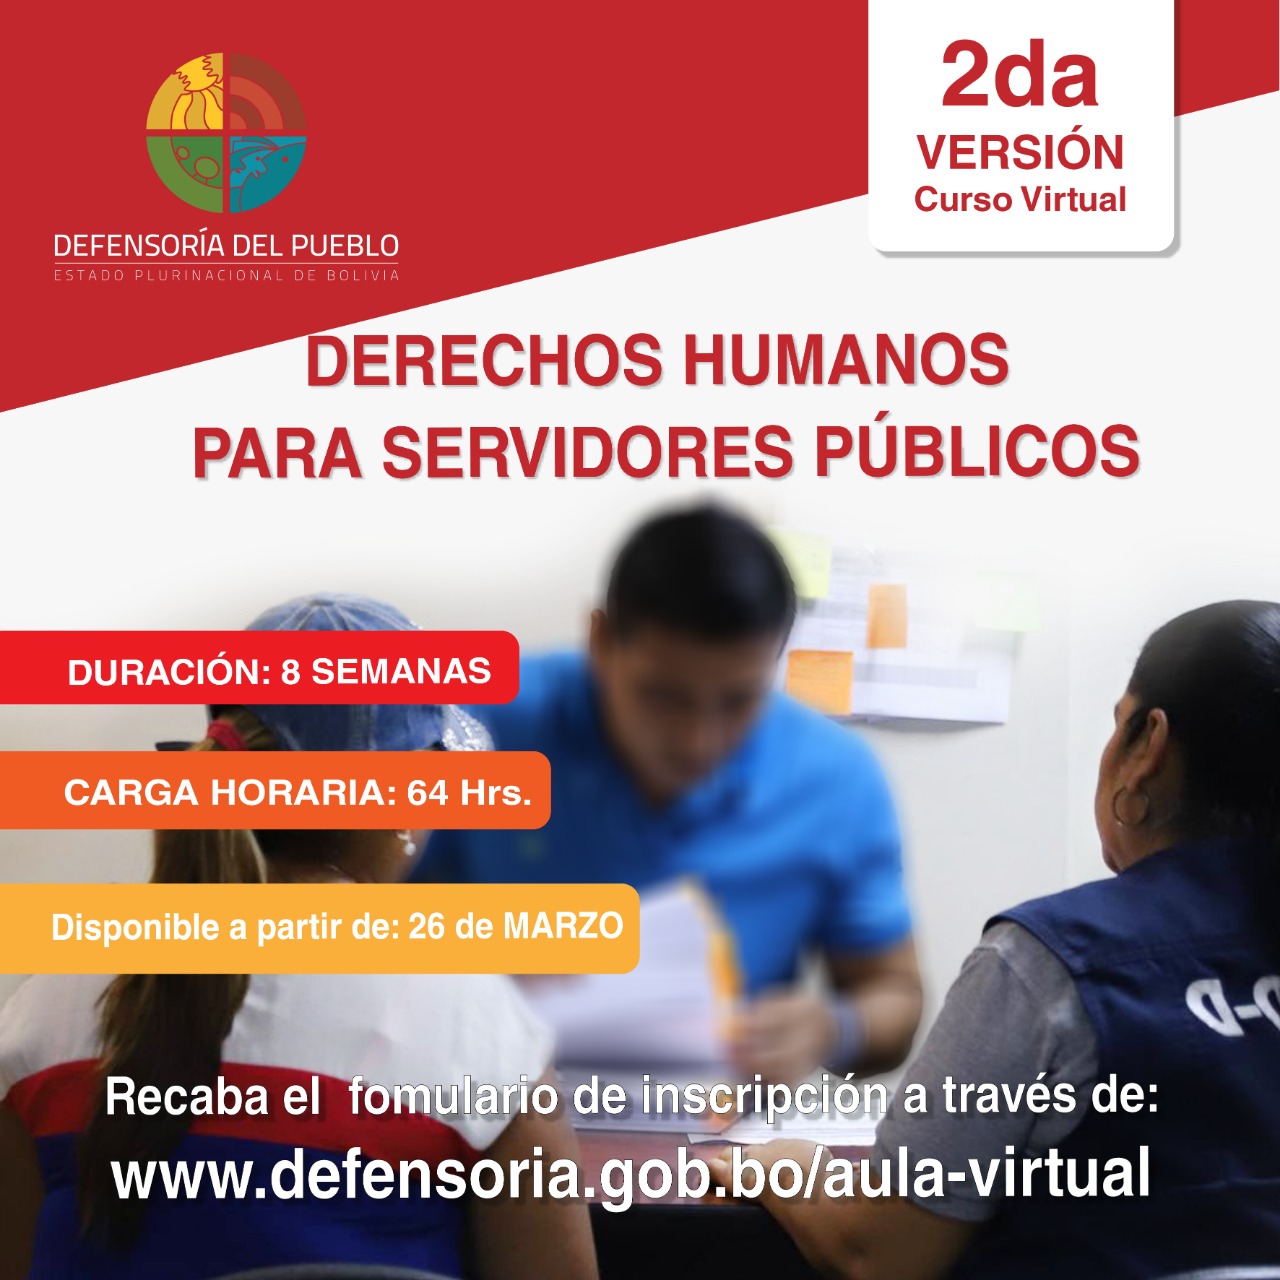 Defensoría del Pueblo habilita nuevos cursos virtuales dirigidos a servidores públicos y personal penitenciario